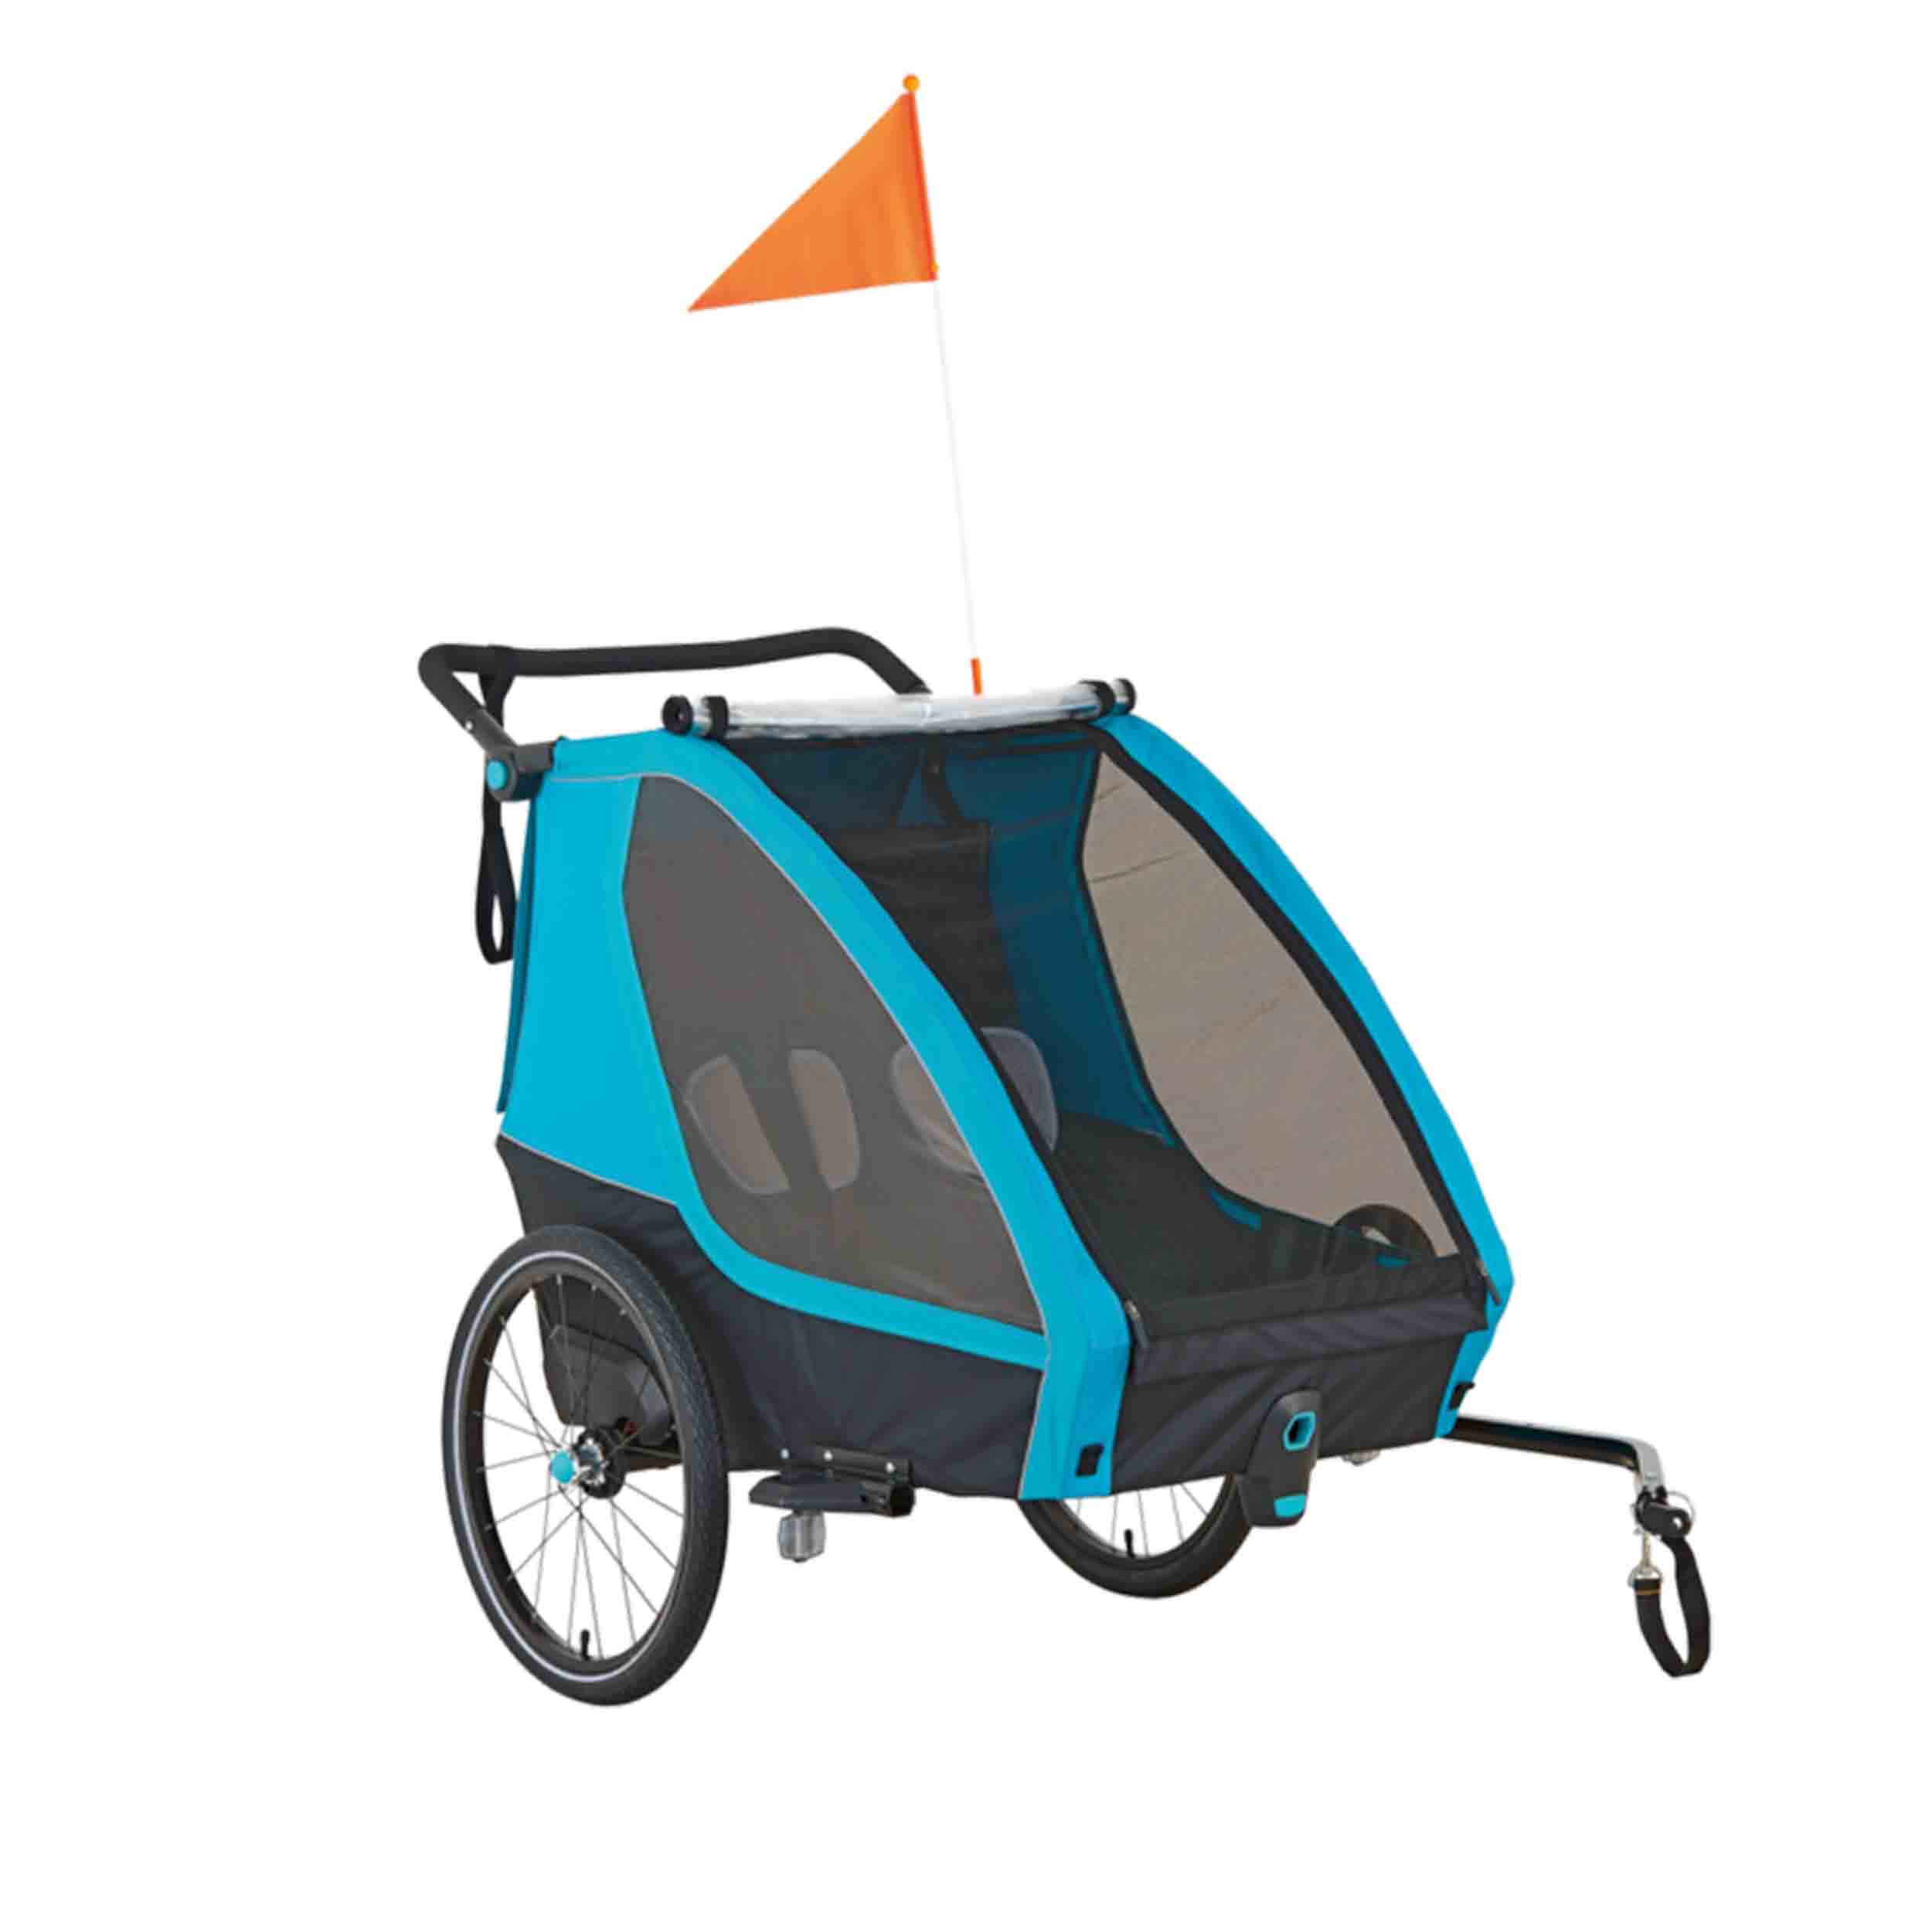 B-Ware-Kinder Fahrradanhänger - Mit Buggy- und Joggerfunktion für 1 oder 2 Kinder